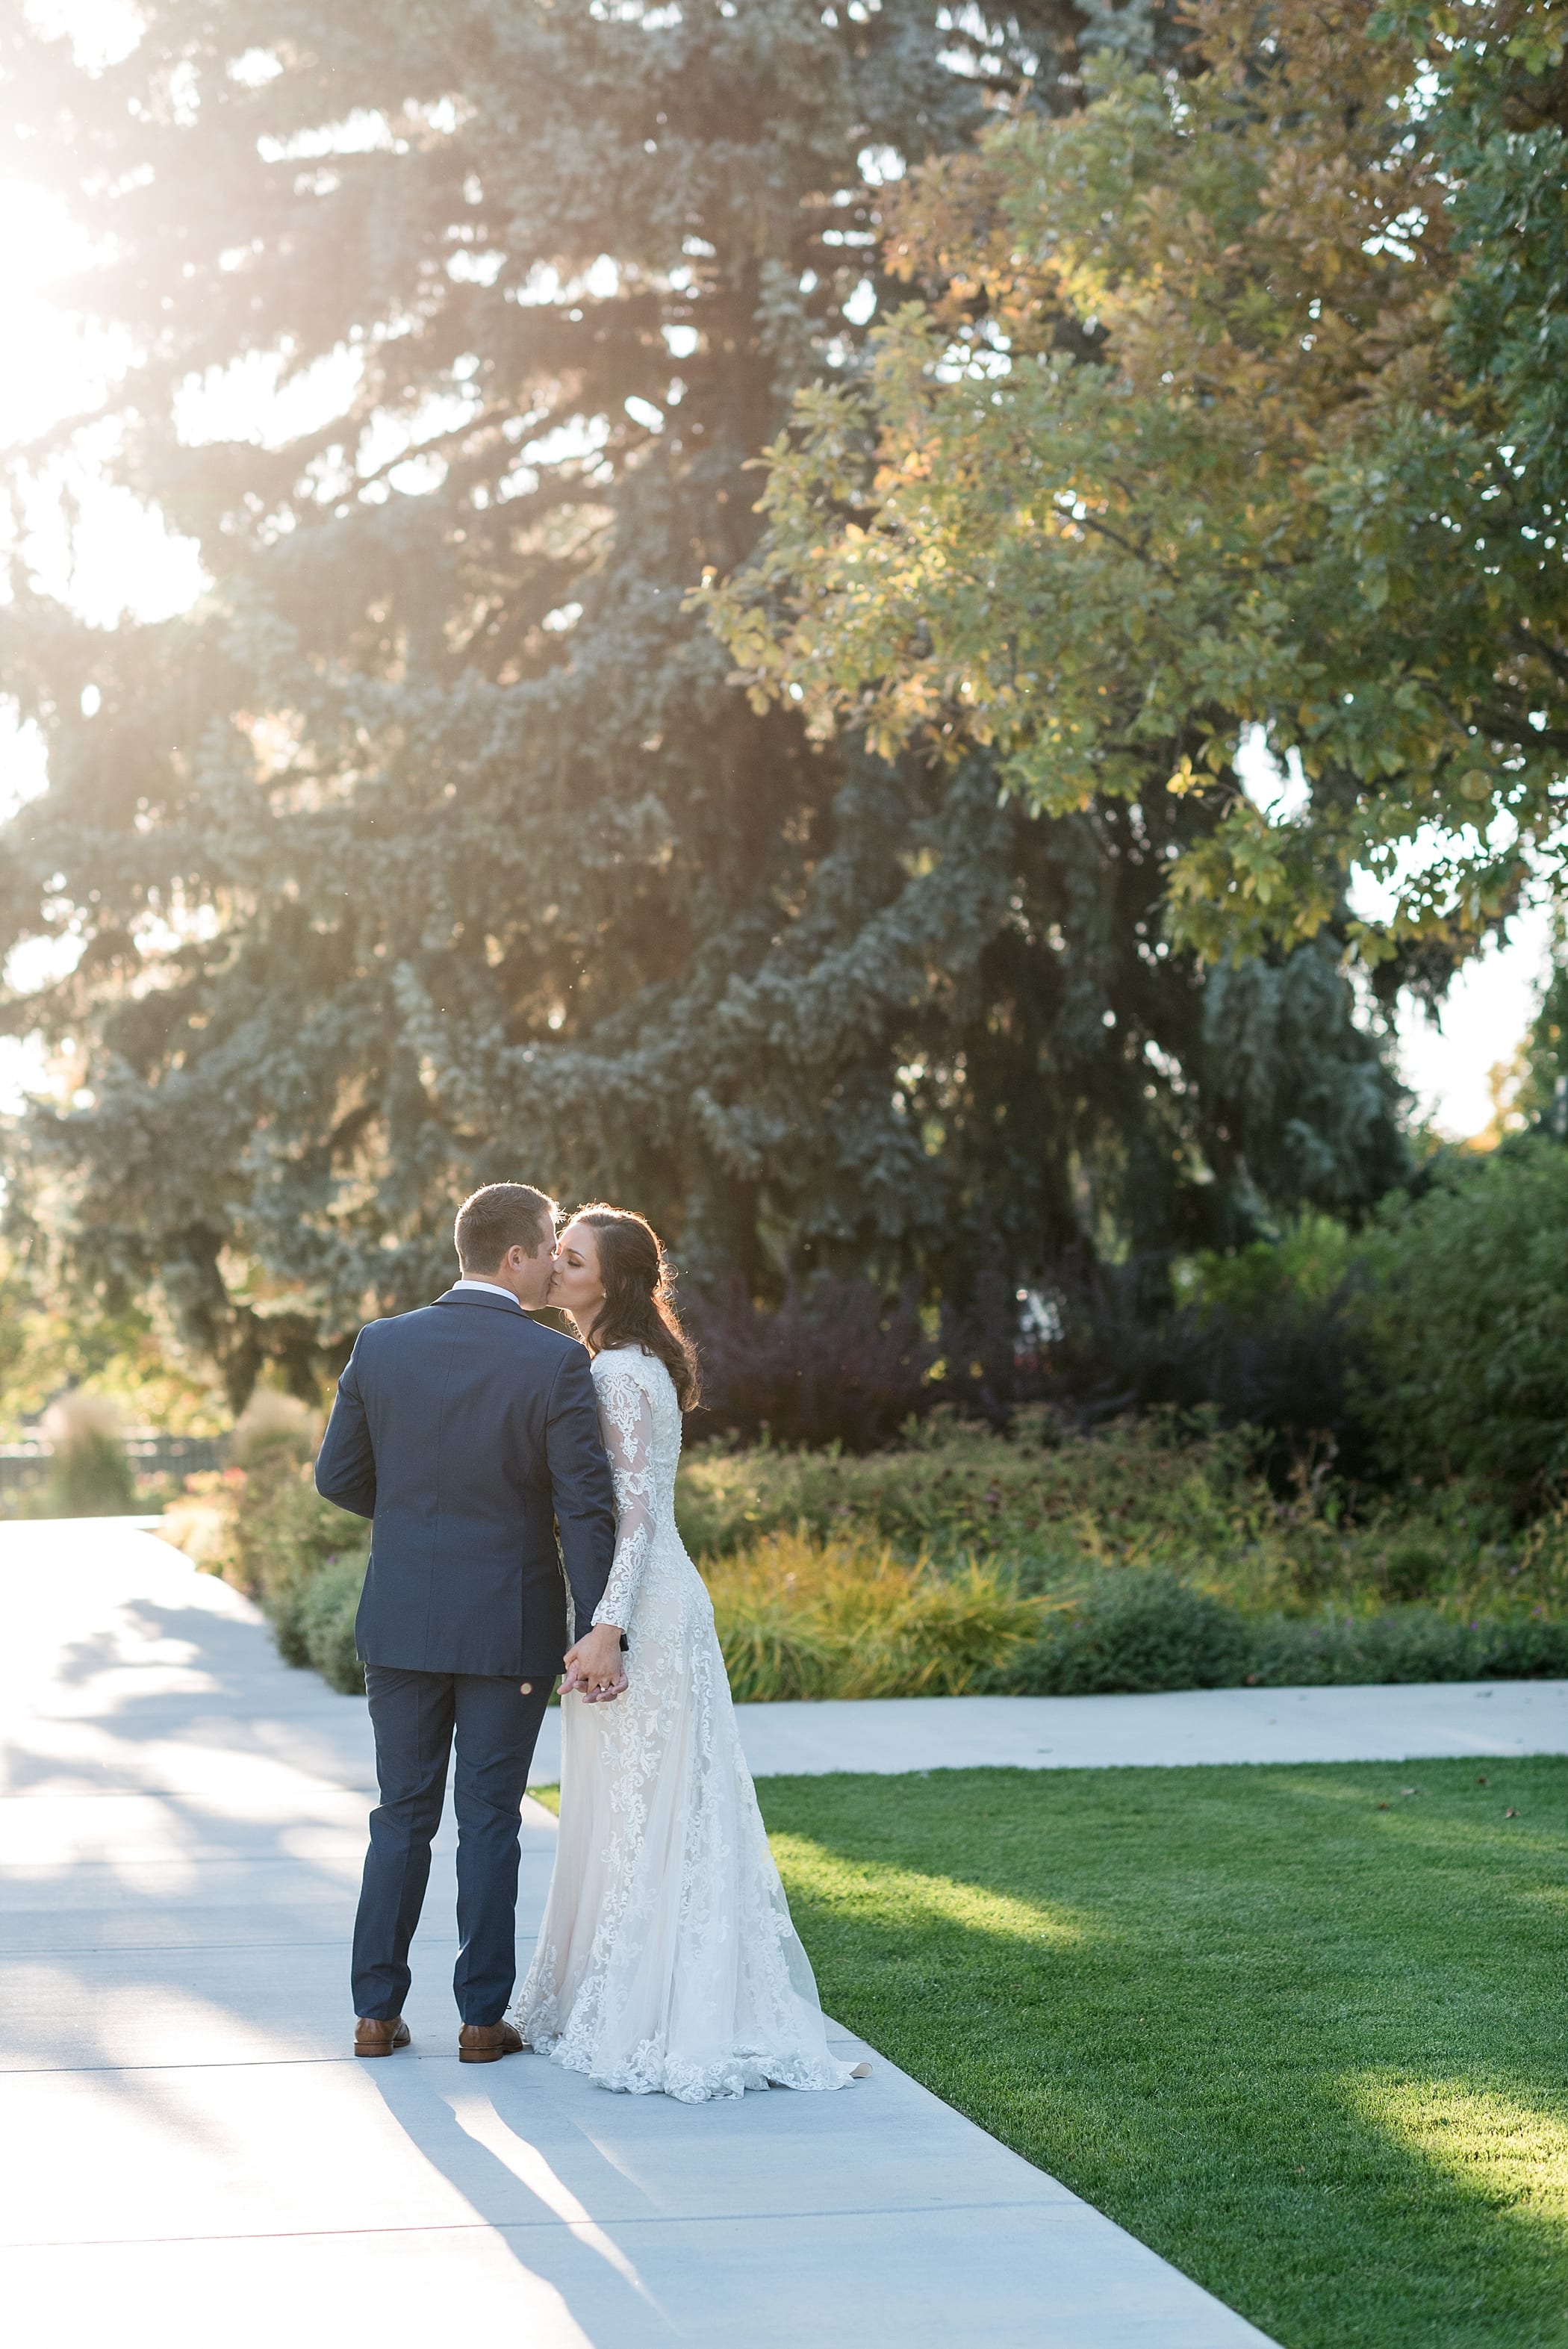 Idaho Falls LDS Temple Wedding | Fall Wedding in Idaho by Michelle & Logan